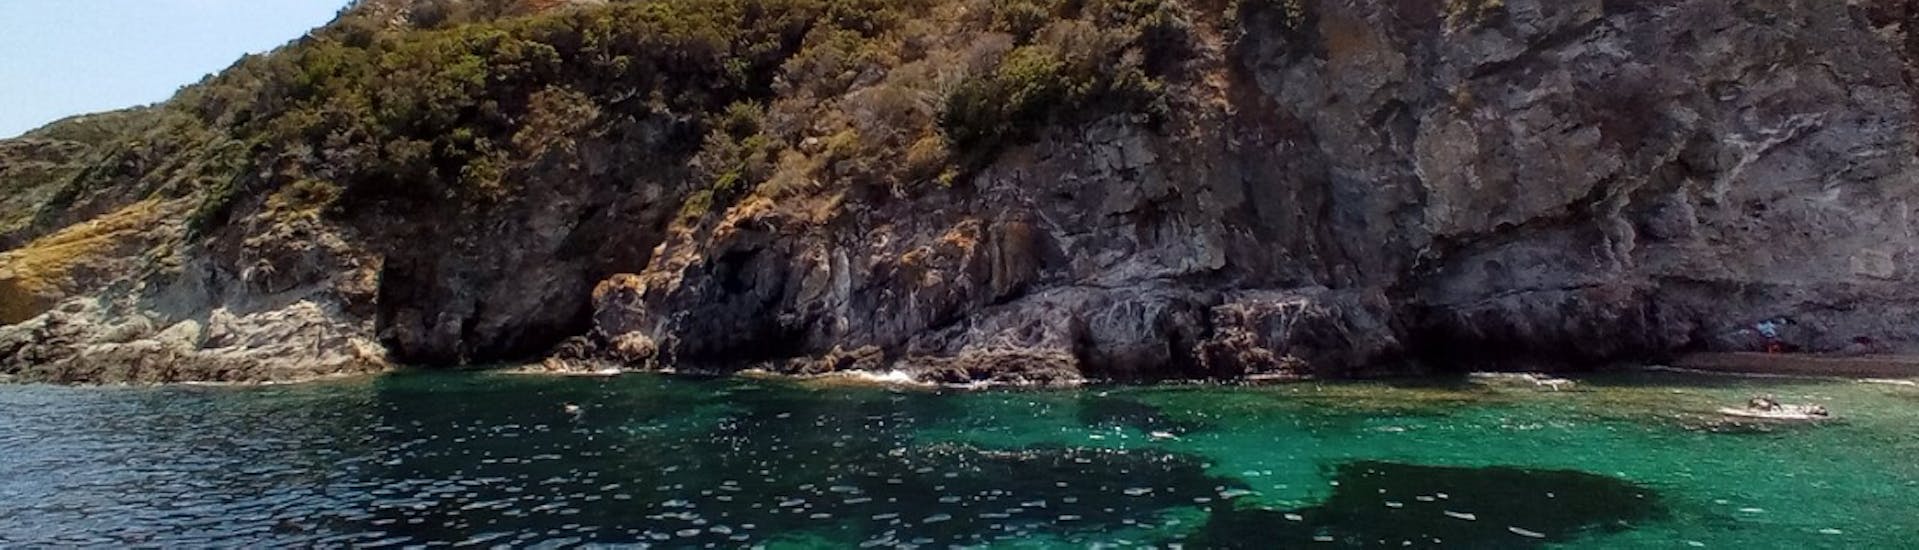 Klippen, die Ihr während unserer Bootstour entlang der Südostküste von Elba mit Motobarca Mickey Mouse Elba sehen könnt.